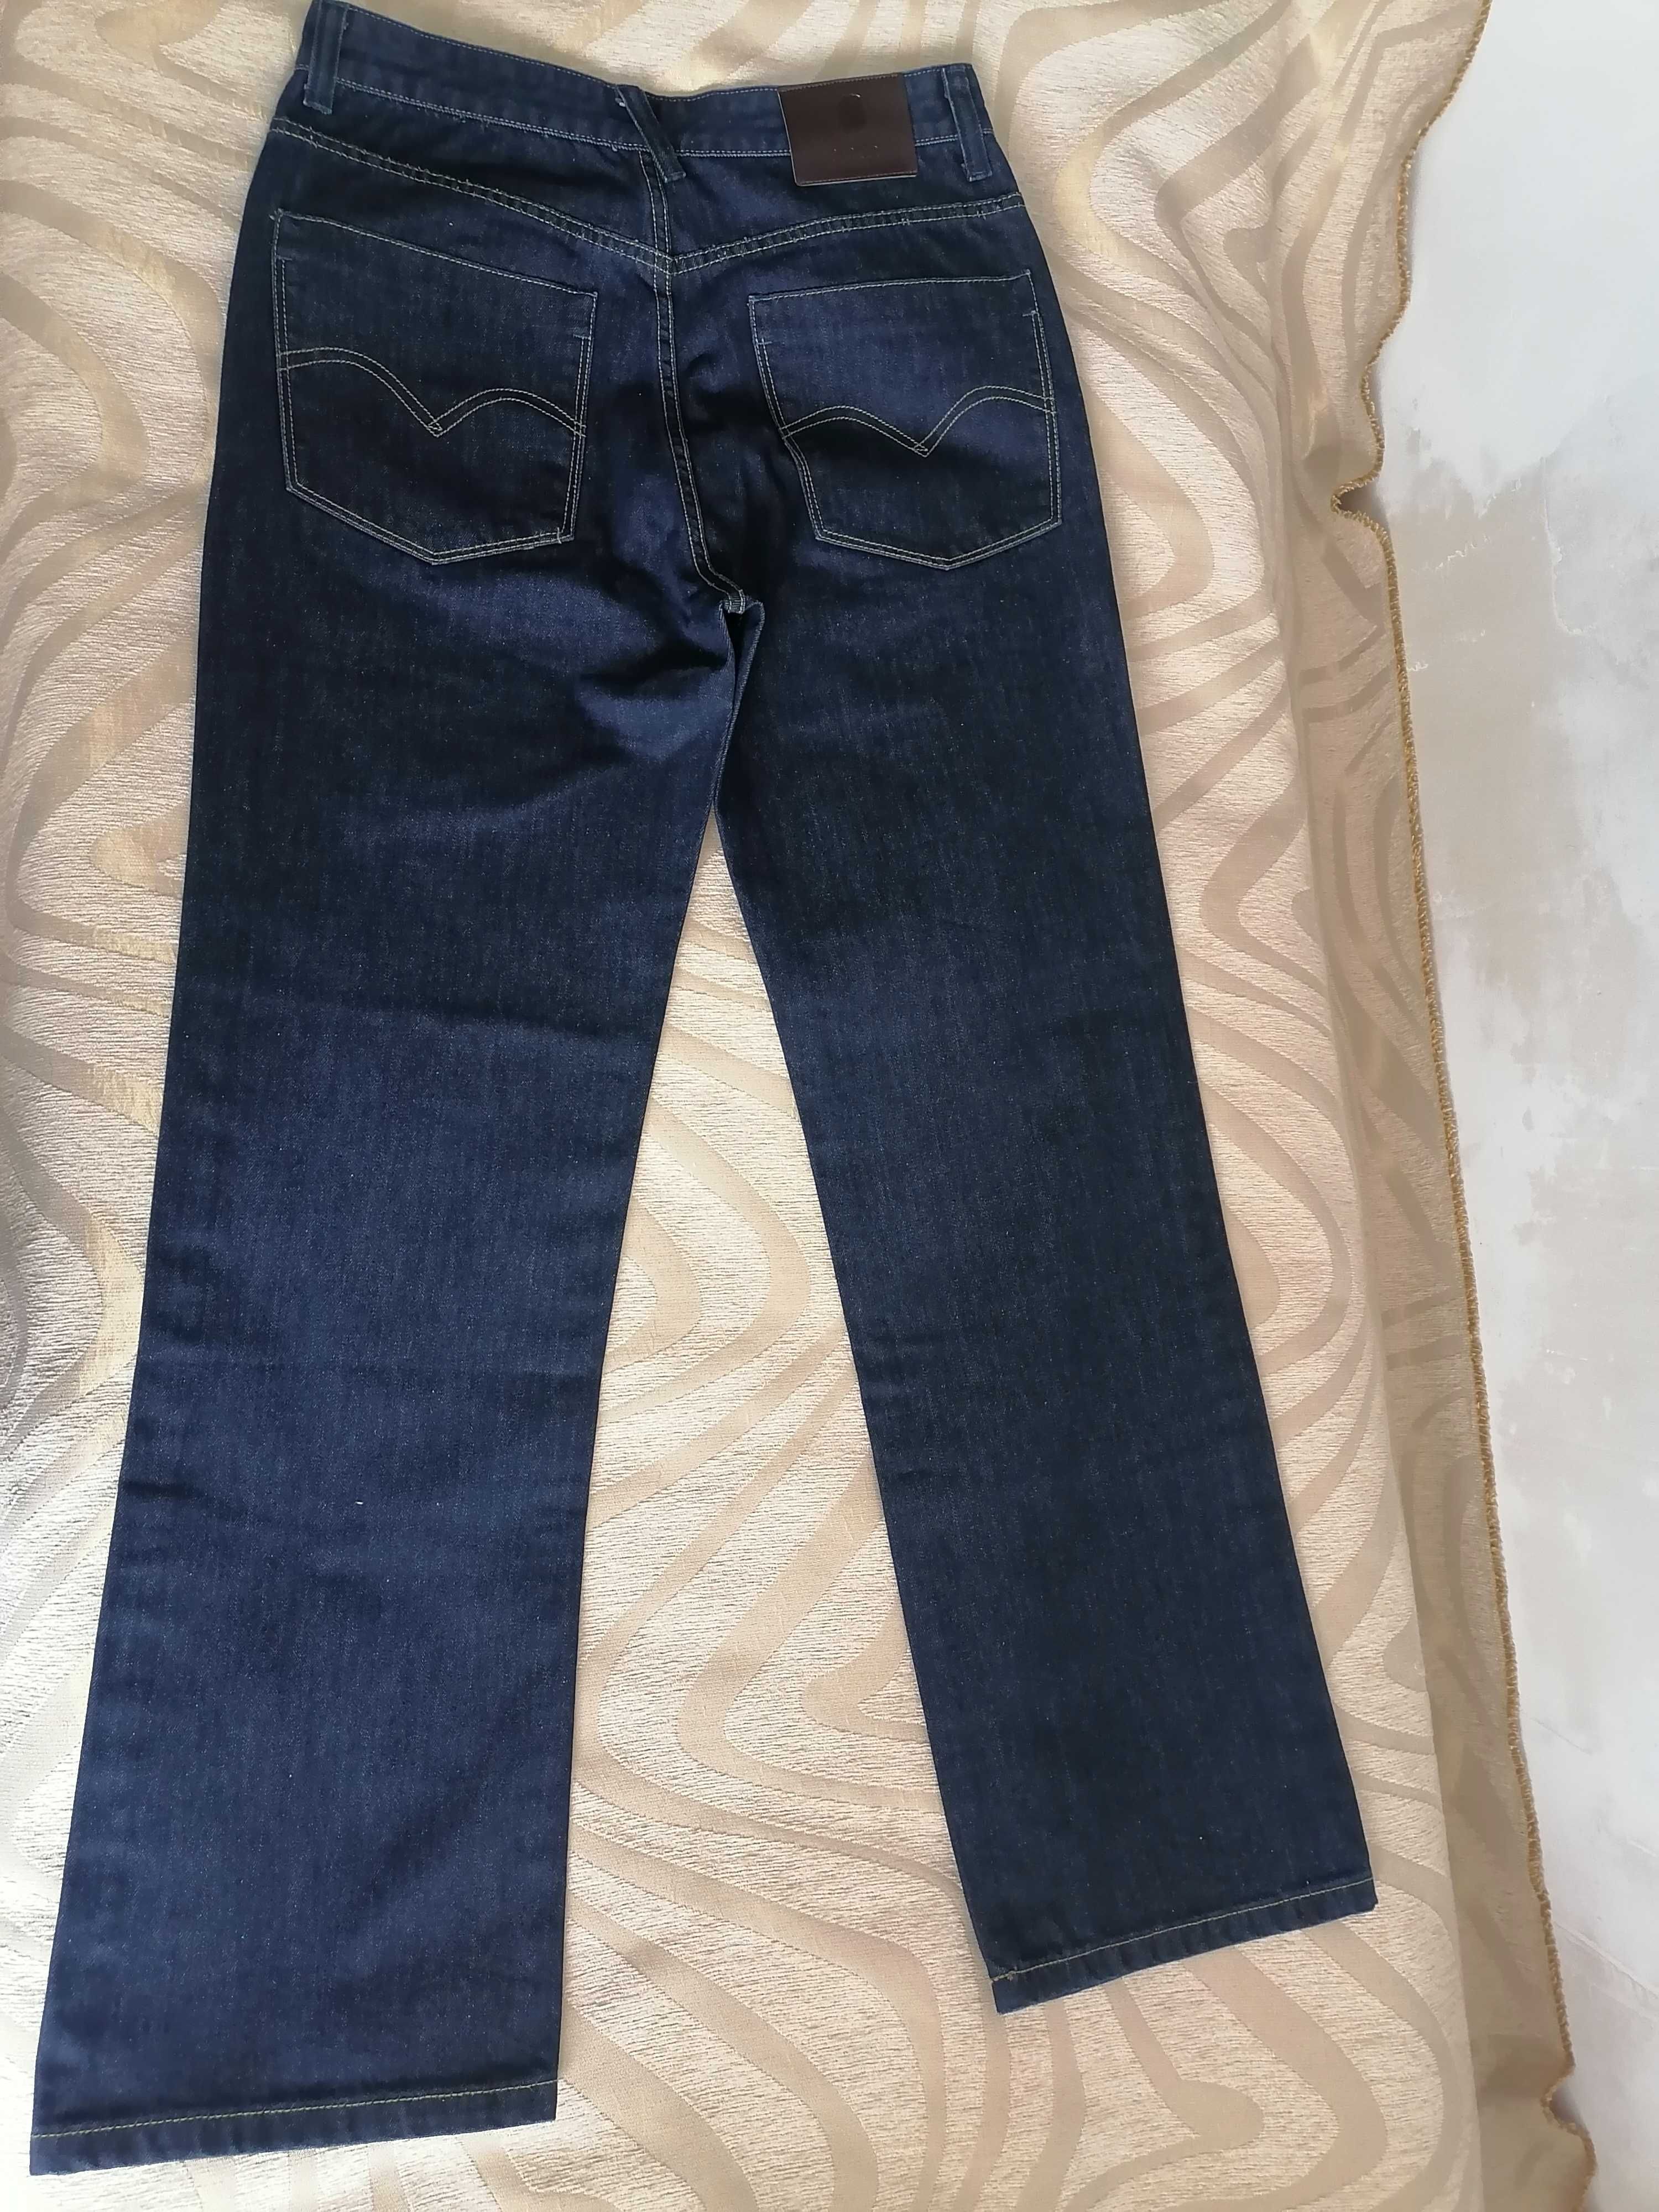 BARKER(Португалия)/разм - W33/50-52/НОВЫЕ джинсы